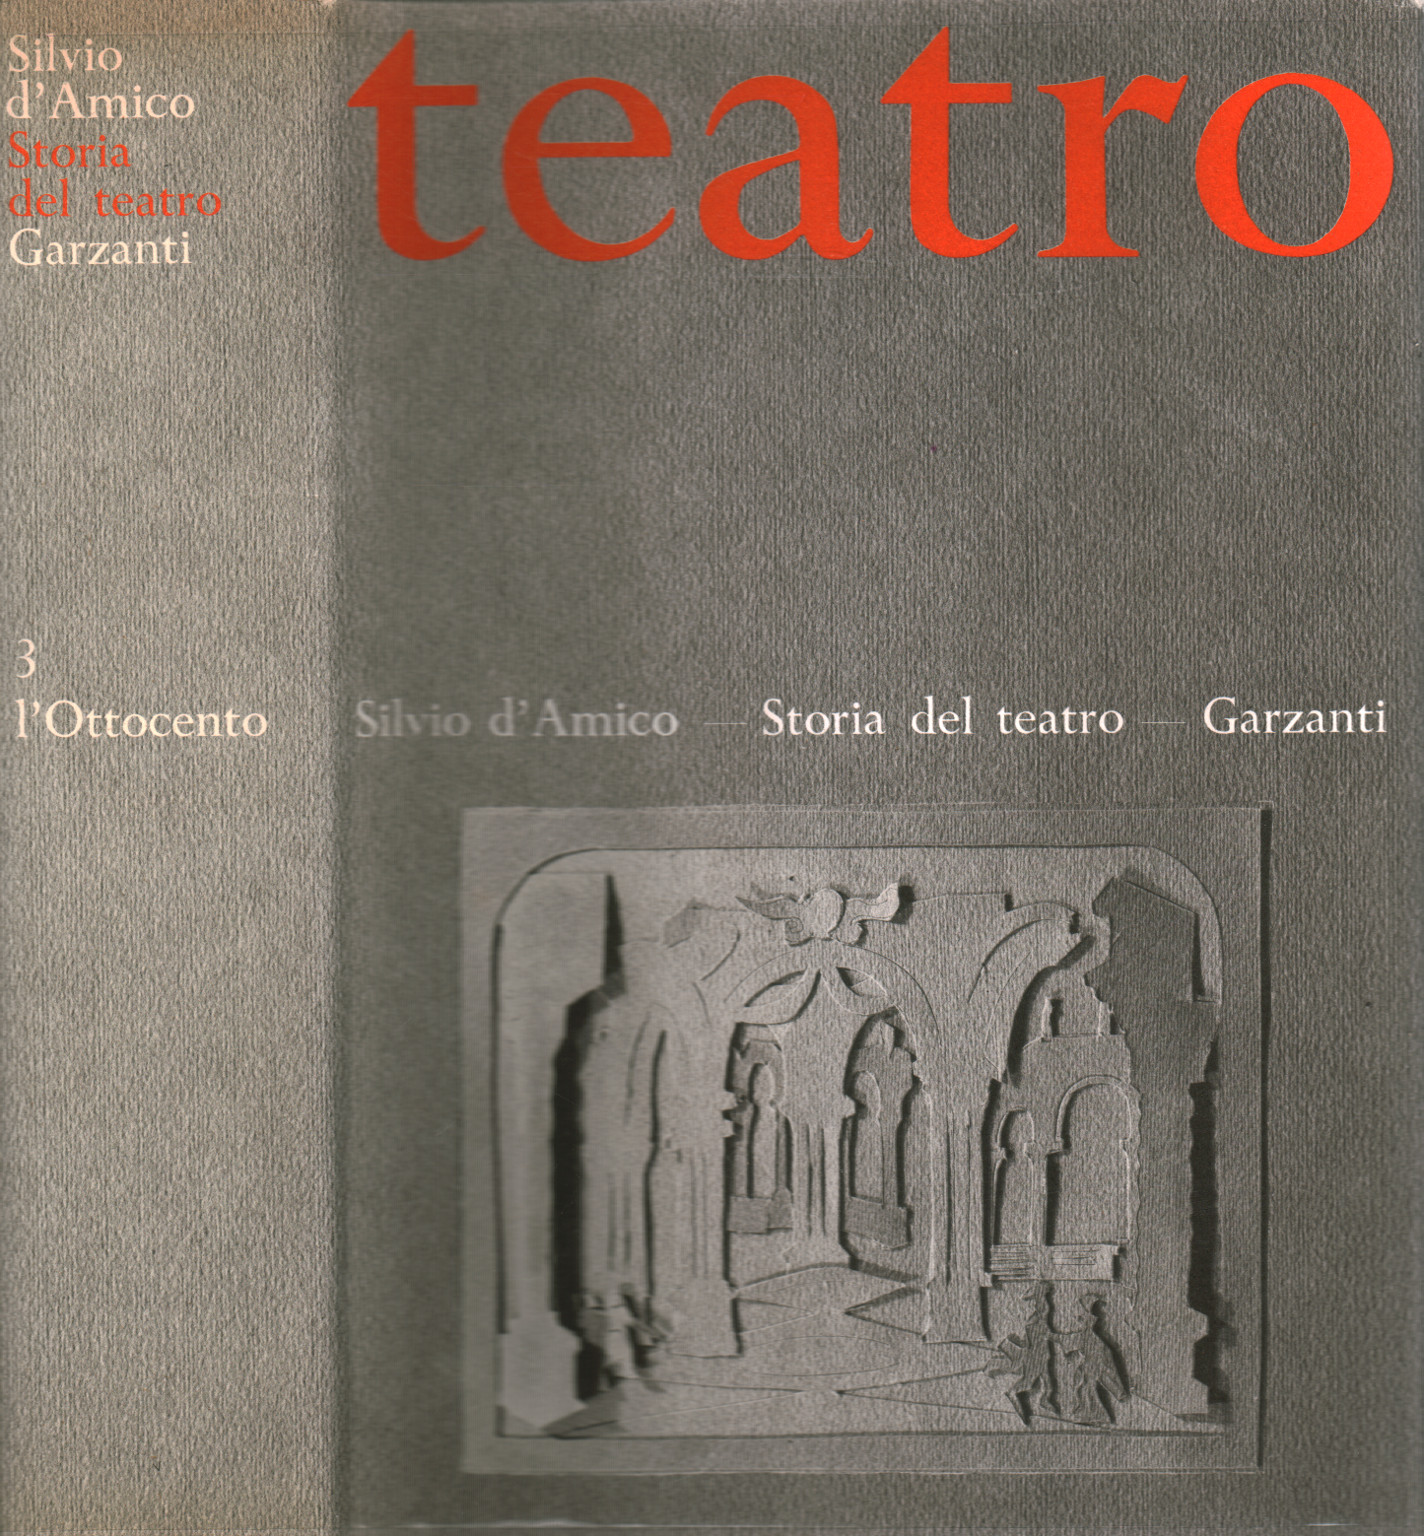 La historia del Teatro y el Drama III: el siglo Xix, s.una.